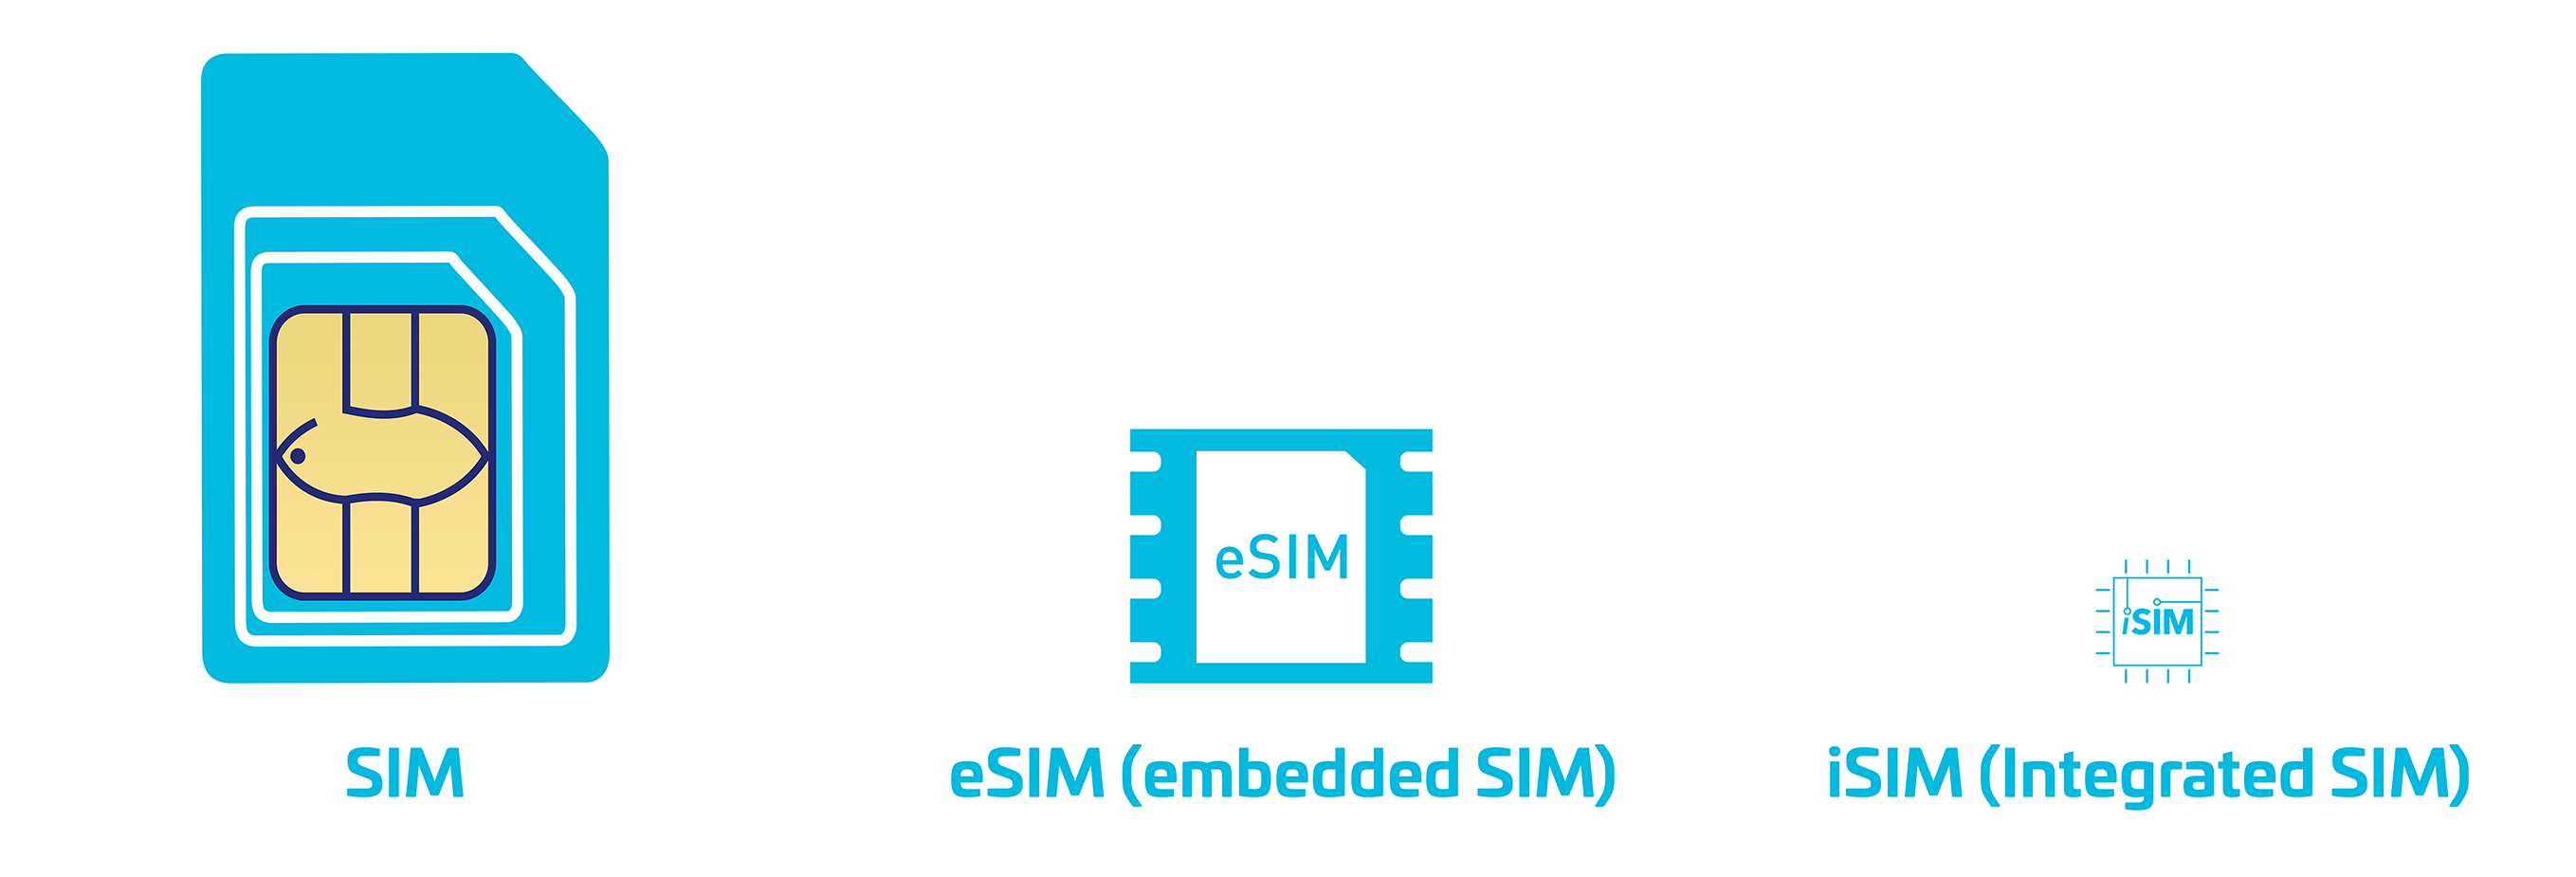 eSIM cards and massive IoT